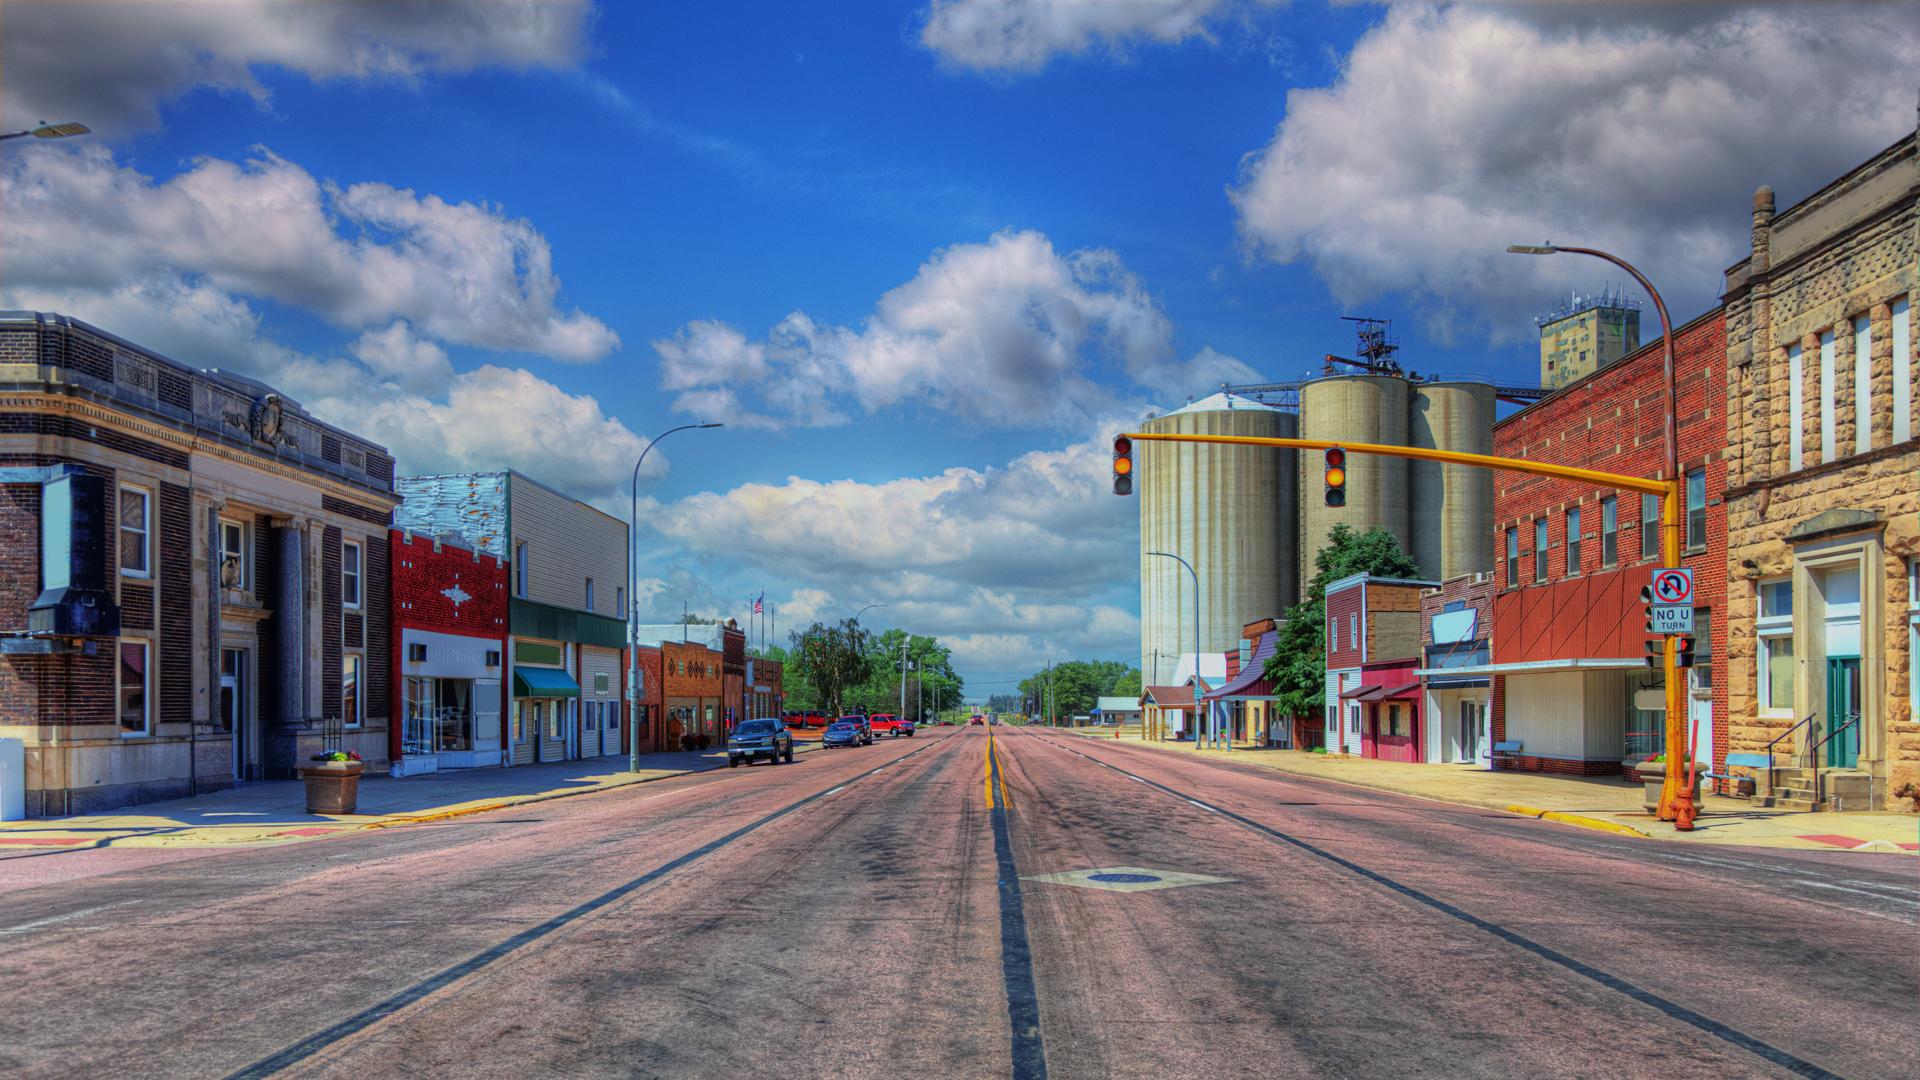 Die Hauptstrasse des Ortes Holstein in Iowa in nördlicher Richtung.